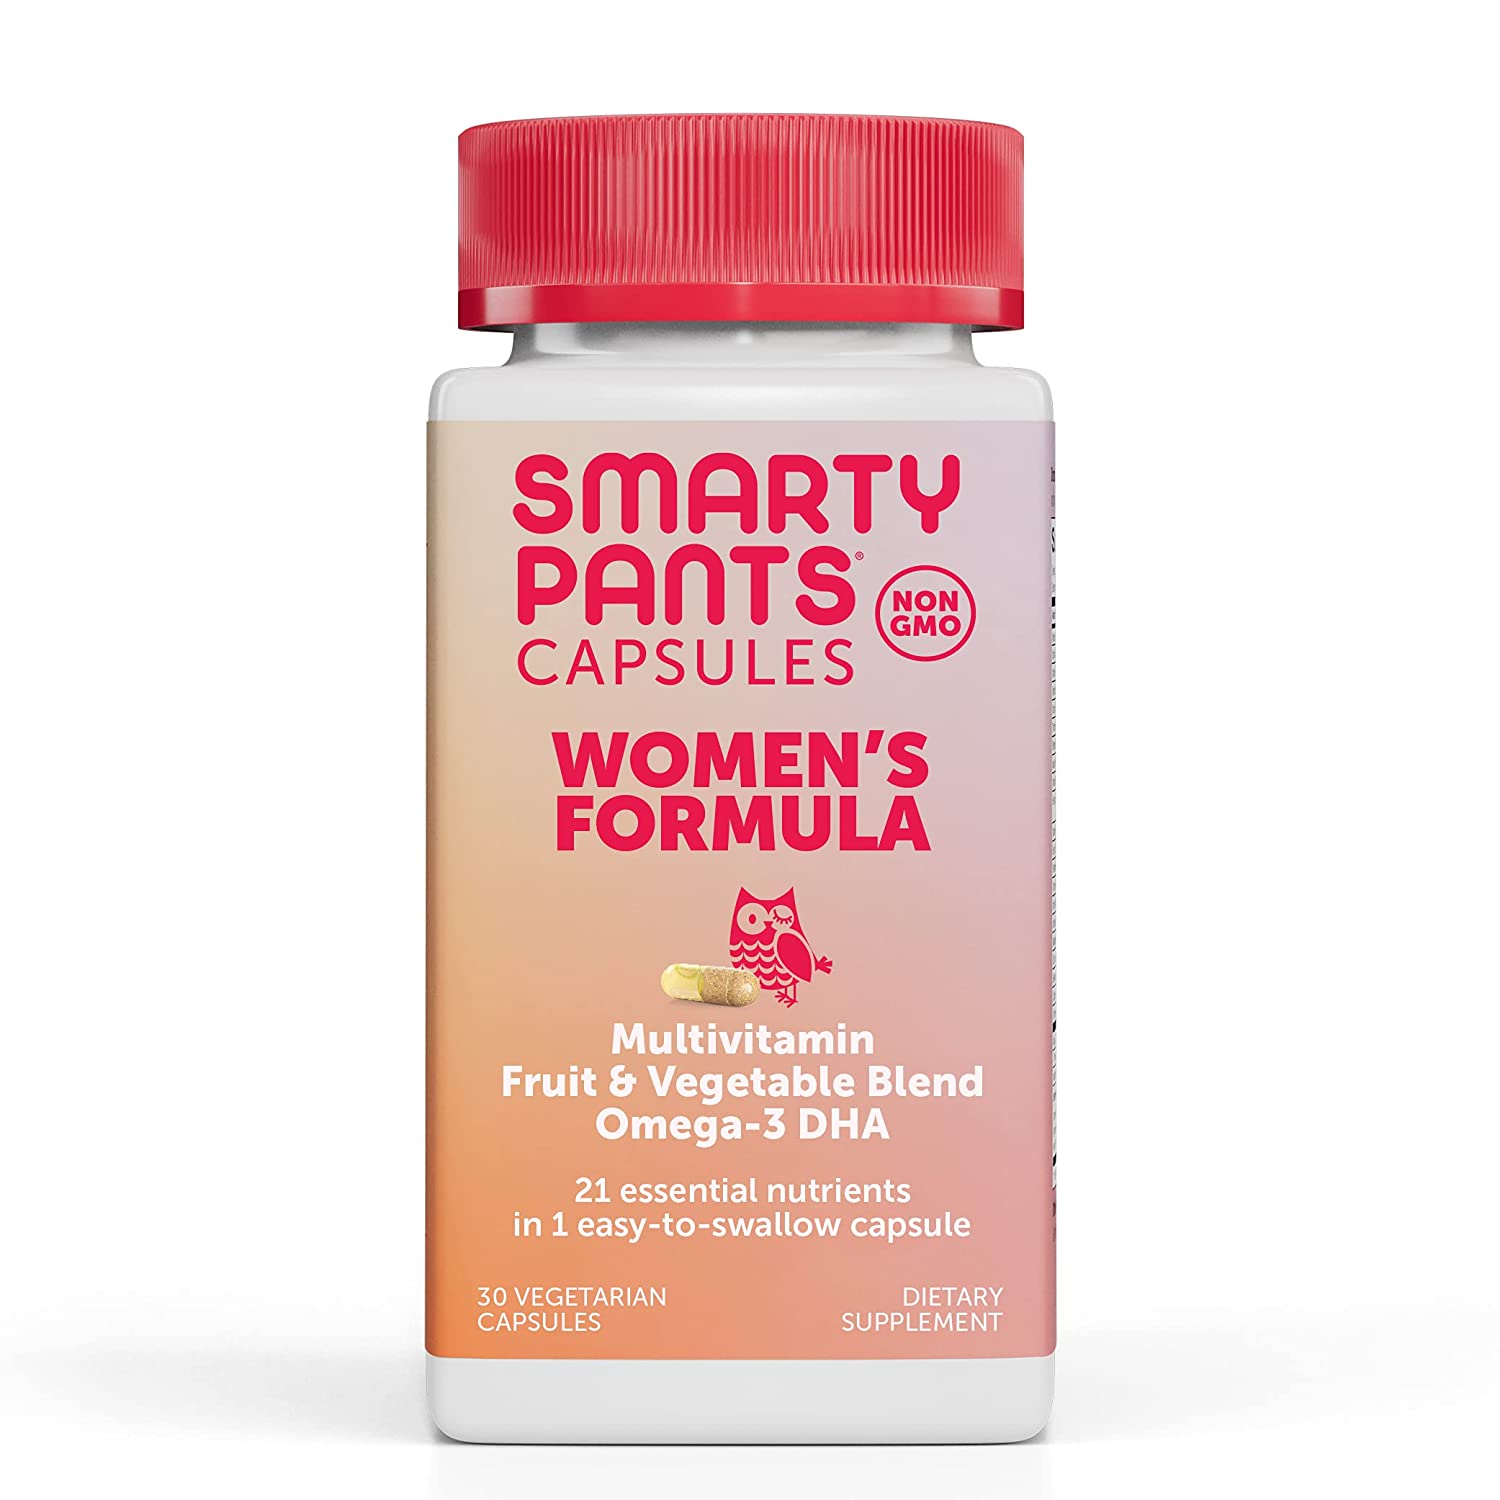 Vitamin cao cấp cho phụ nữ Smarty Pants Women's dạng viên nang hàng Mỹ - Chứng nhận Purity Award